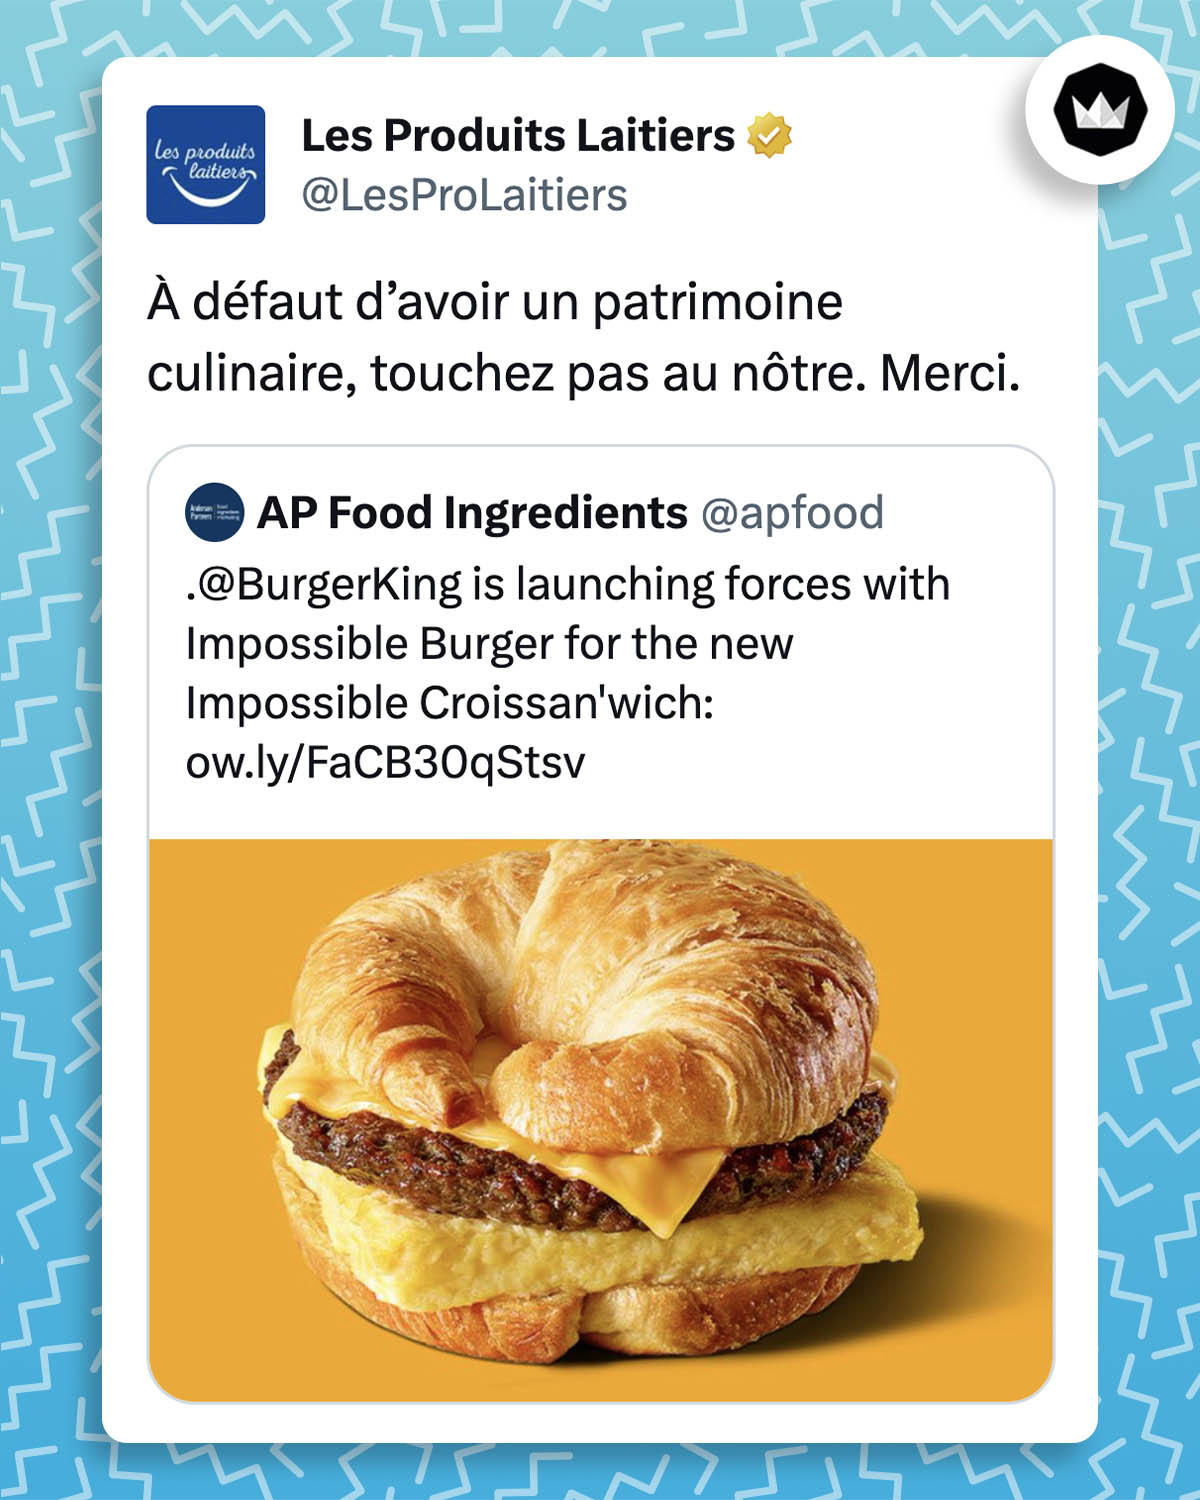 Le compte @apfood partage une photo d'un burger dont les pains sont un croissant coupé en deux lancé par Burger King en 2020.
Les Produits Laitiers répondent : à défaut d'avoir un patrimoine culinaire, touchez pas au nôtre. Merci.